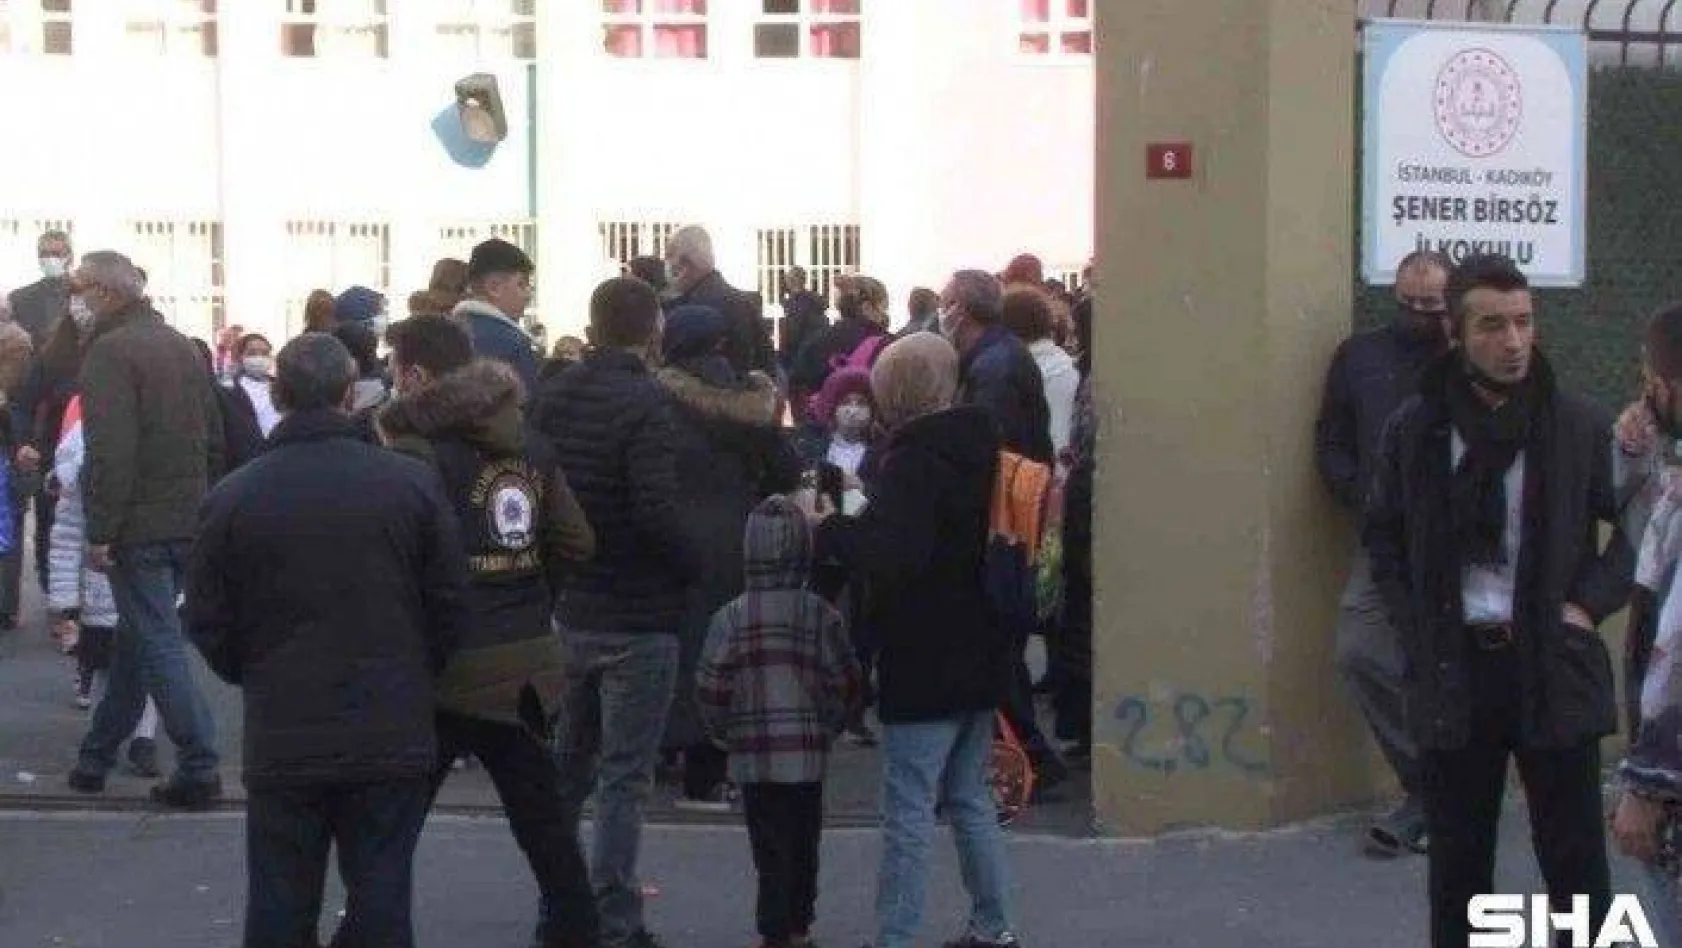 Kadıköy'de şiddet uygulanan okuldaki öğrencilerin velileri konuştu